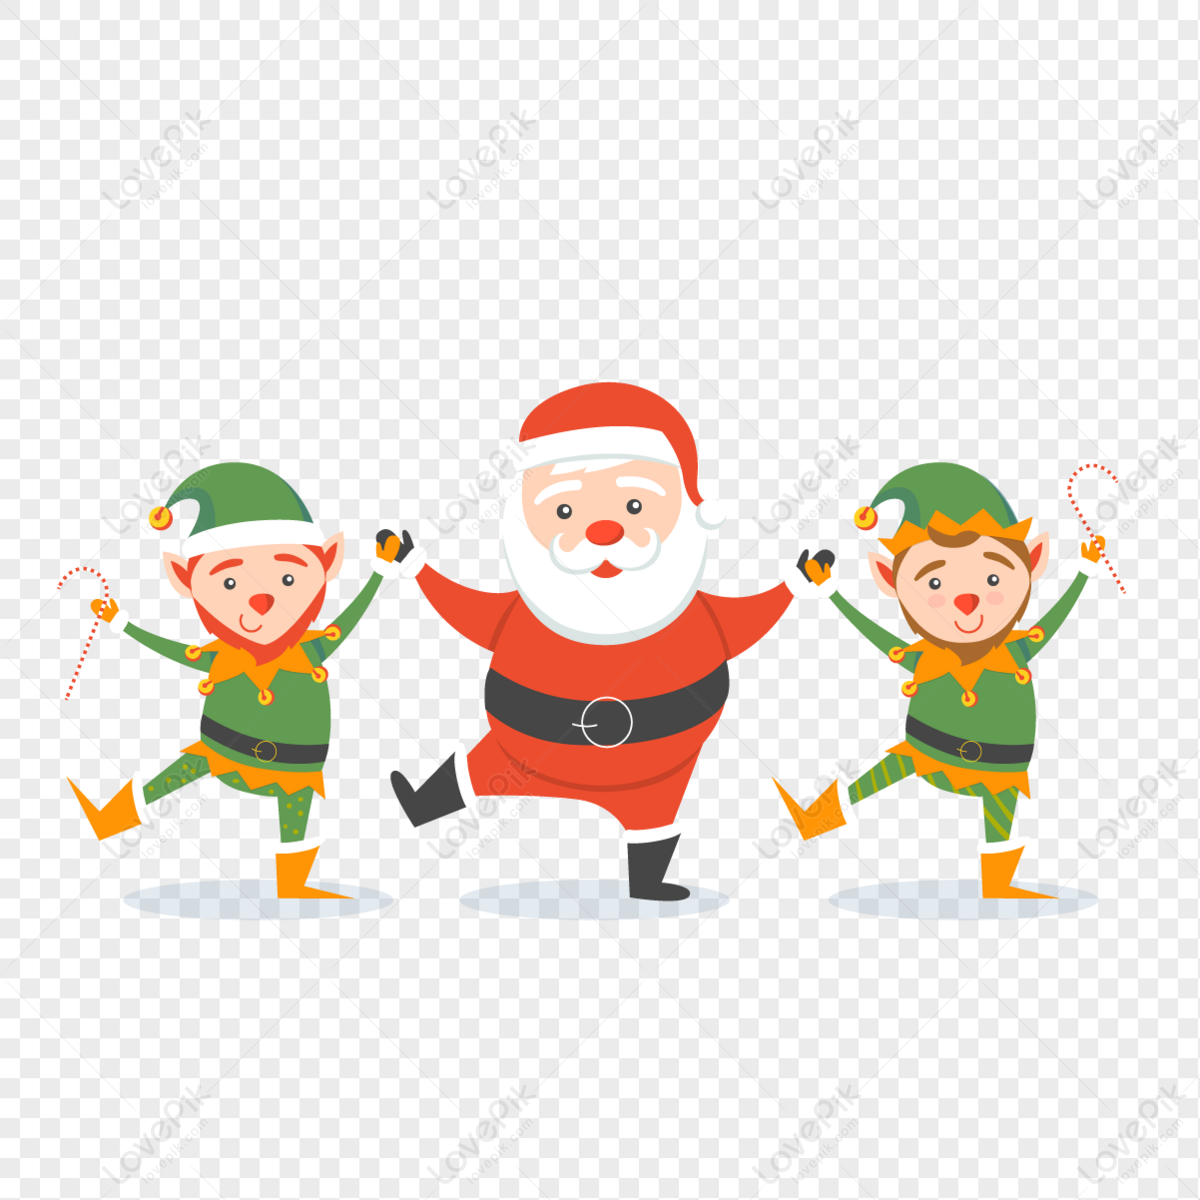 Hãy xem Tỳ Hưu múa lân ngày Giáng Sinh, khi ông già Noel cùng với những chú lân đang nhảy múa với niềm vui và sự phấn khích. Chúng sẽ giúp bạn cảm thấy nhiều niềm vui vào thời điểm đặc biệt này trong năm.